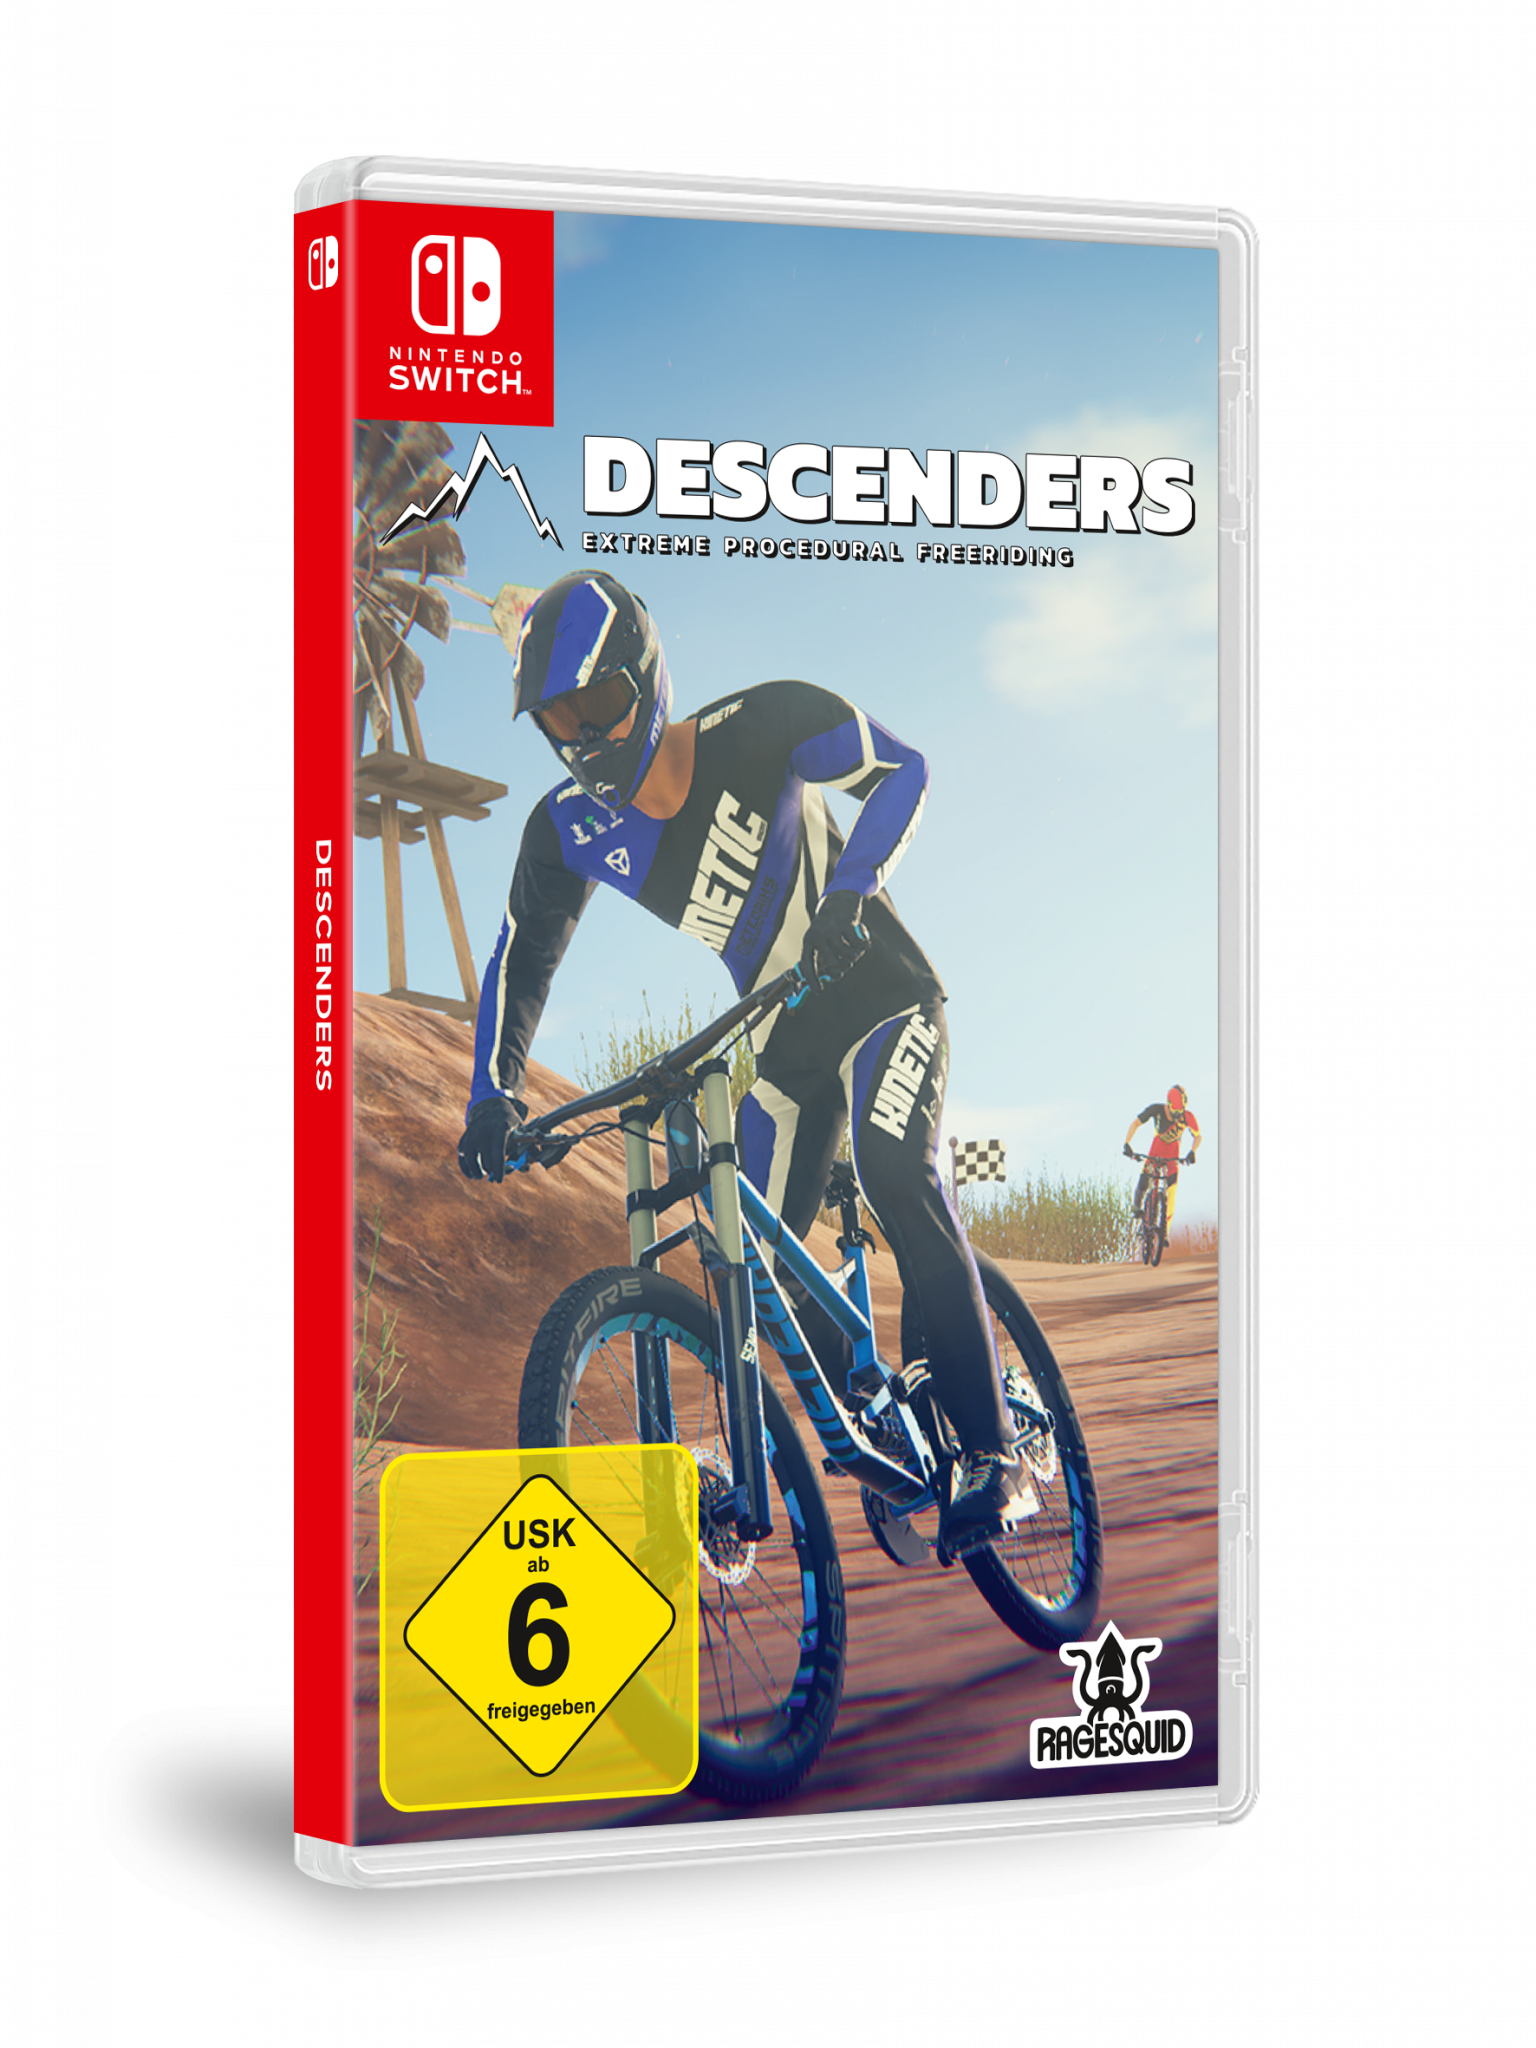 Switch] Descenders [Nintendo -